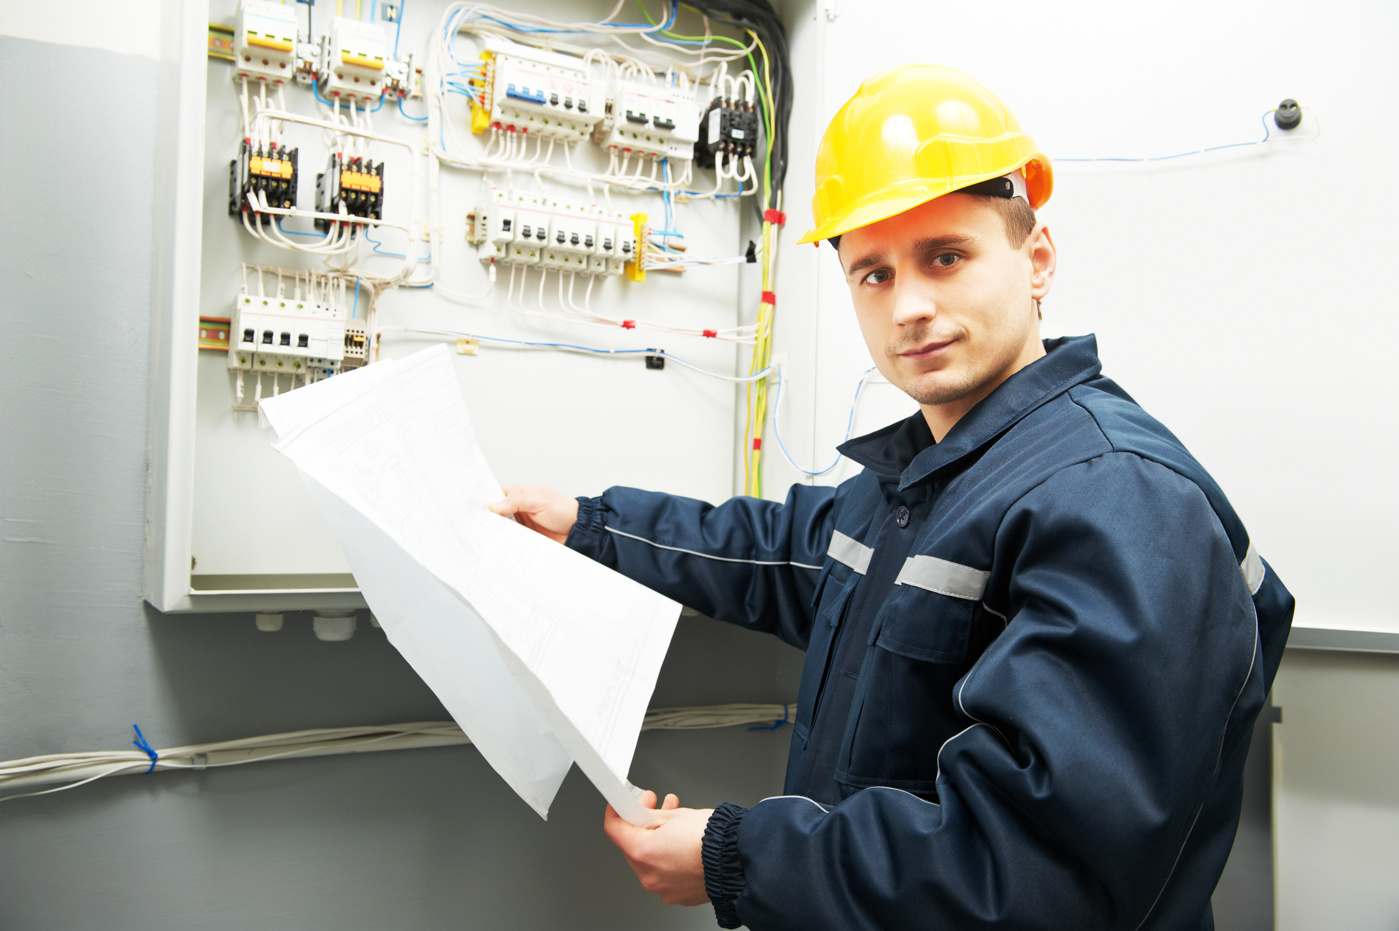 Un responsabile di progetto elettrico per l'installazione e la sicurezza con certificato federale ispeziona un'installazione elettrica in un edificio.